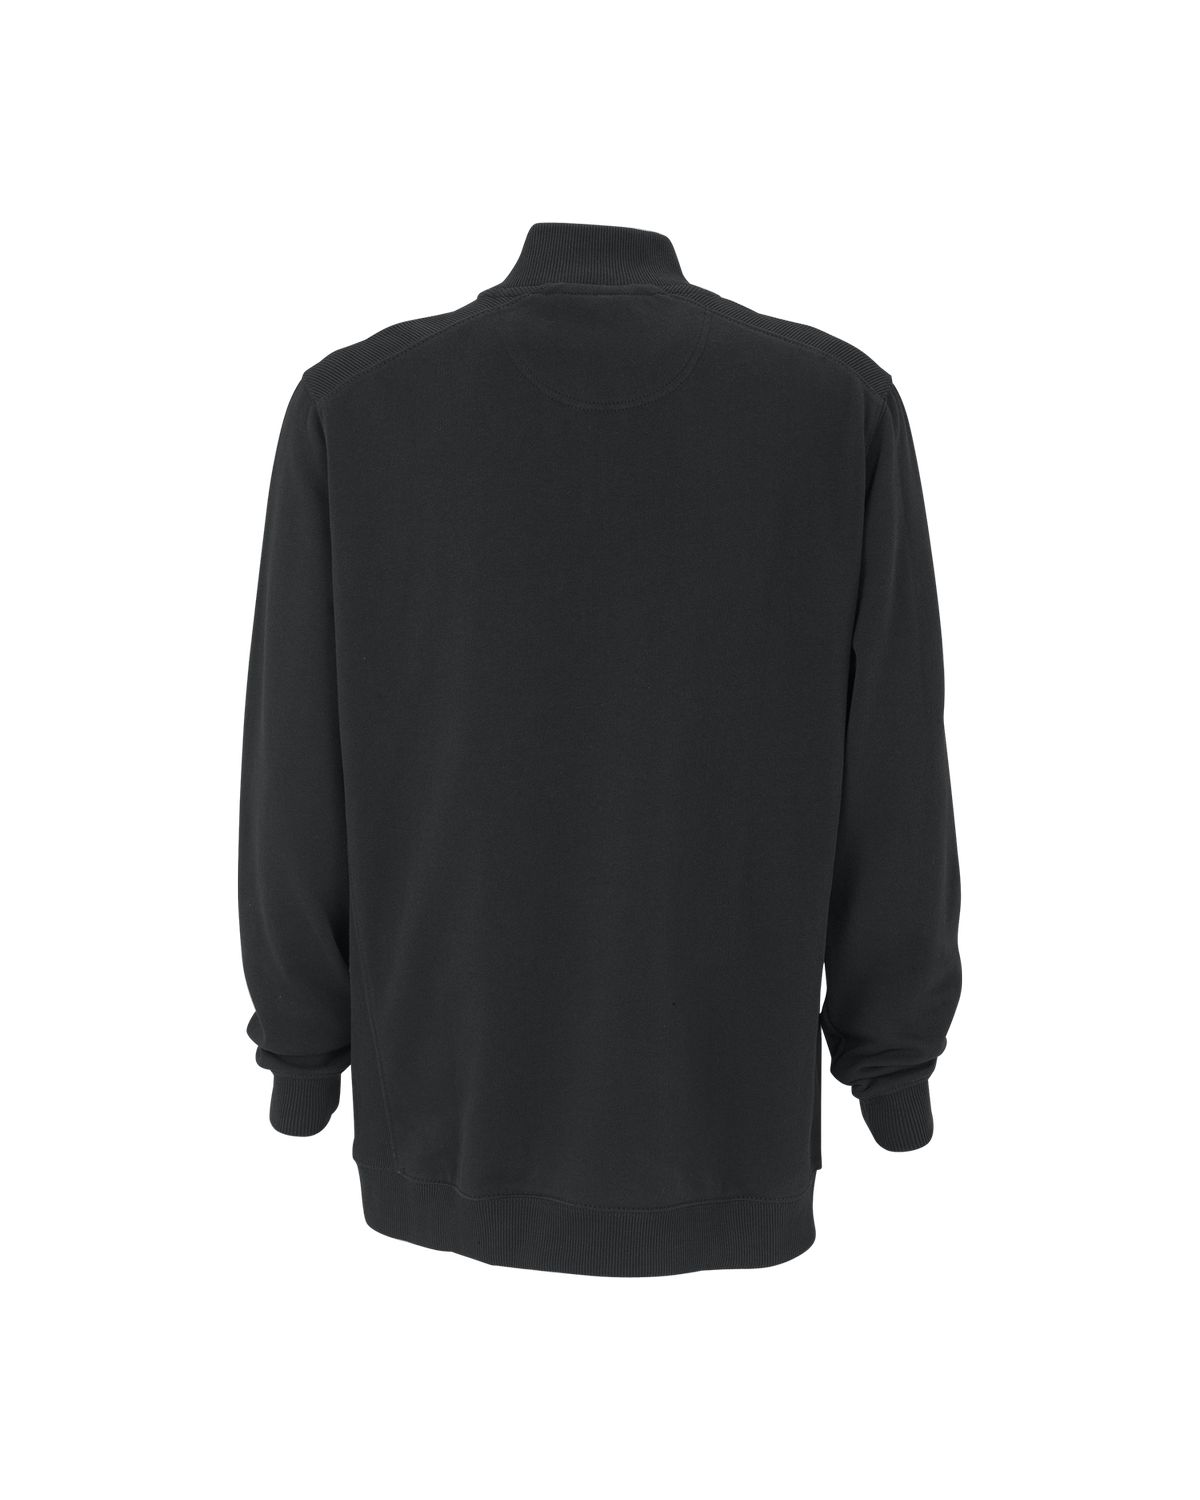 'Vantage 3280 Premium Cotton 1/4-Zip Fleece Pullover'